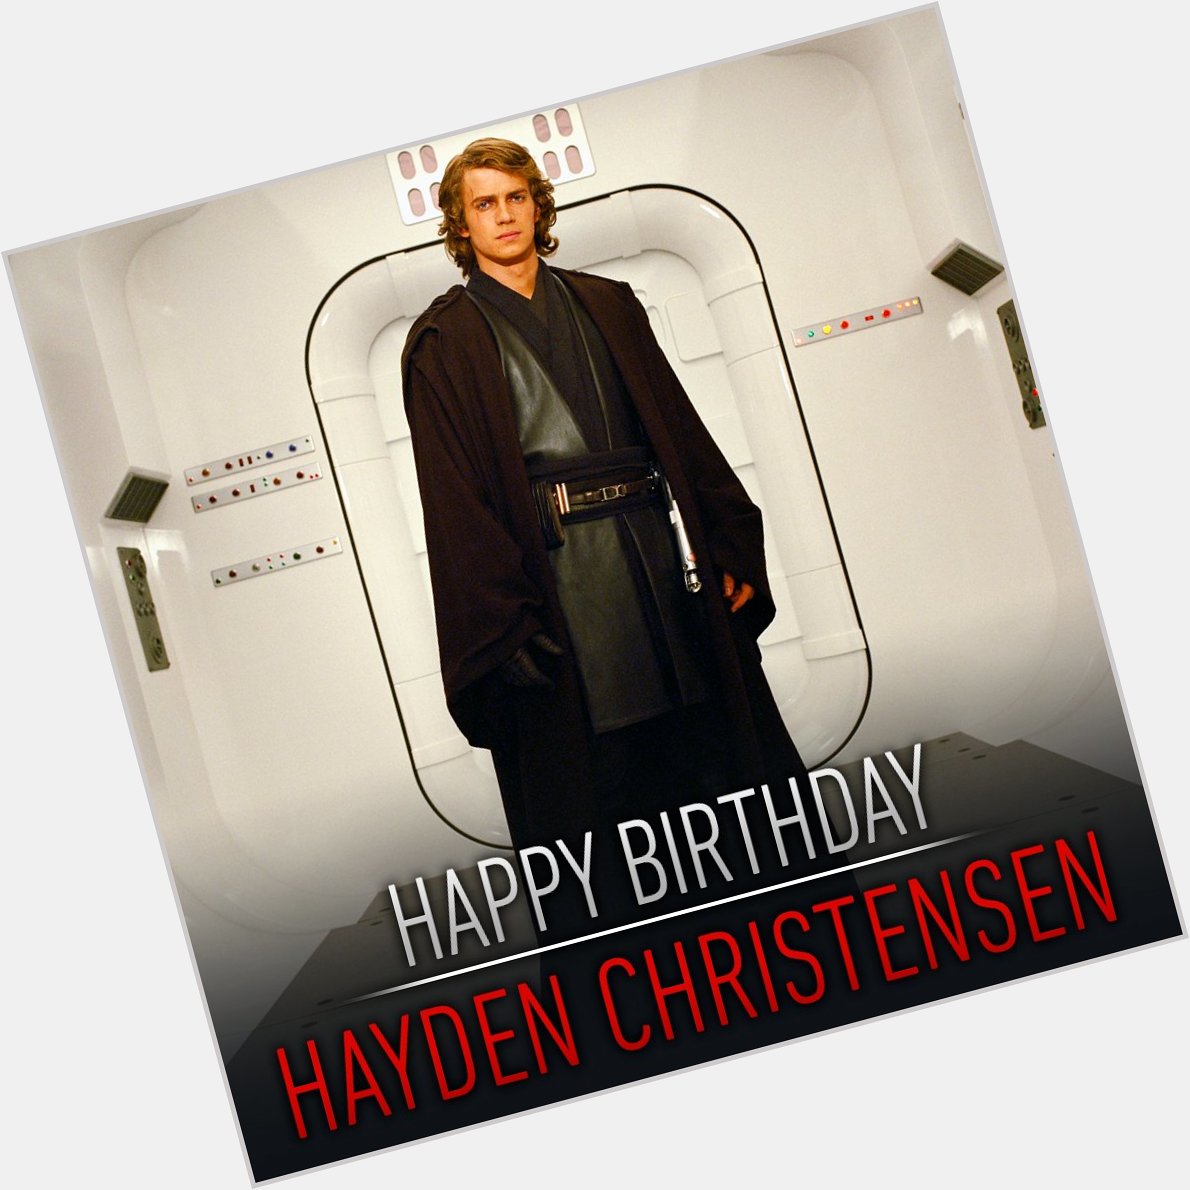 Happy birthday to Anakin Skywalker himself, Hayden Christensen 